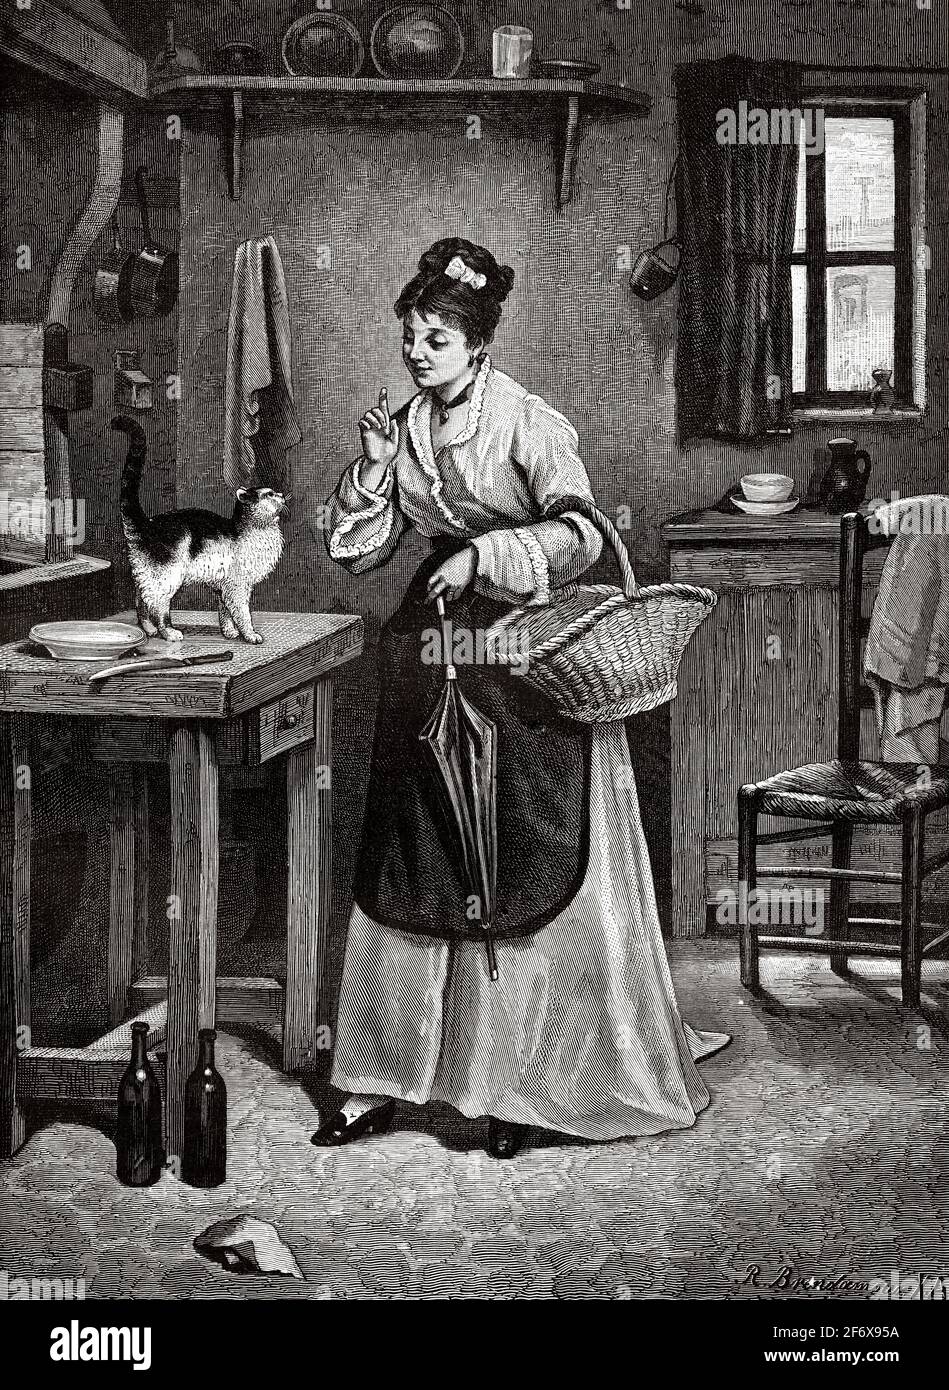 Traditionelle Szene in der Küche eines Hauses aus dem 19. Jahrhundert. Eine Frau schimpft eine Katze auf einem Tisch. Alte Illustration aus dem 19. Jahrhundert von El Mundo Ilustrado 1879 Stockfoto